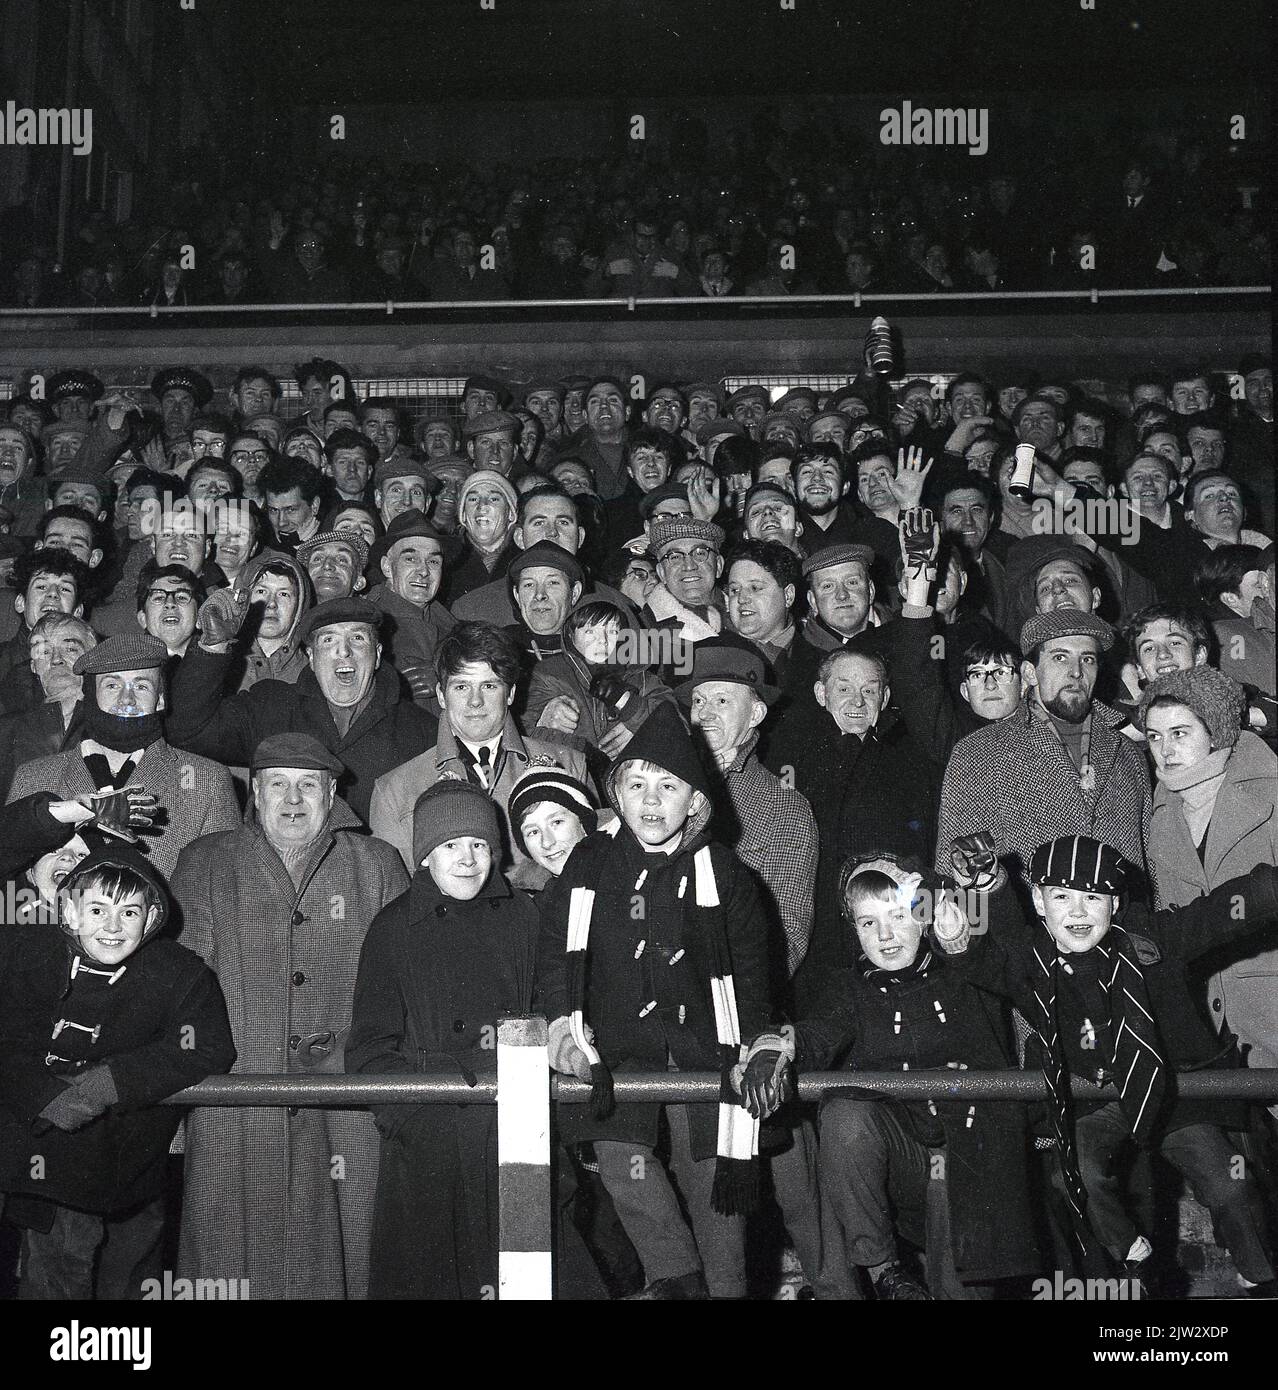 1960s, des fans de football historiques se tenant ensemble sur une terrasse traditionnelle pour regarder un match, lors d'un match en soirée... manteaux, casquettes plates pour hommes, manteaux de sport et chapeaux de galet pour les jeunes, l'époque avant les répliques de chemises! Banque D'Images